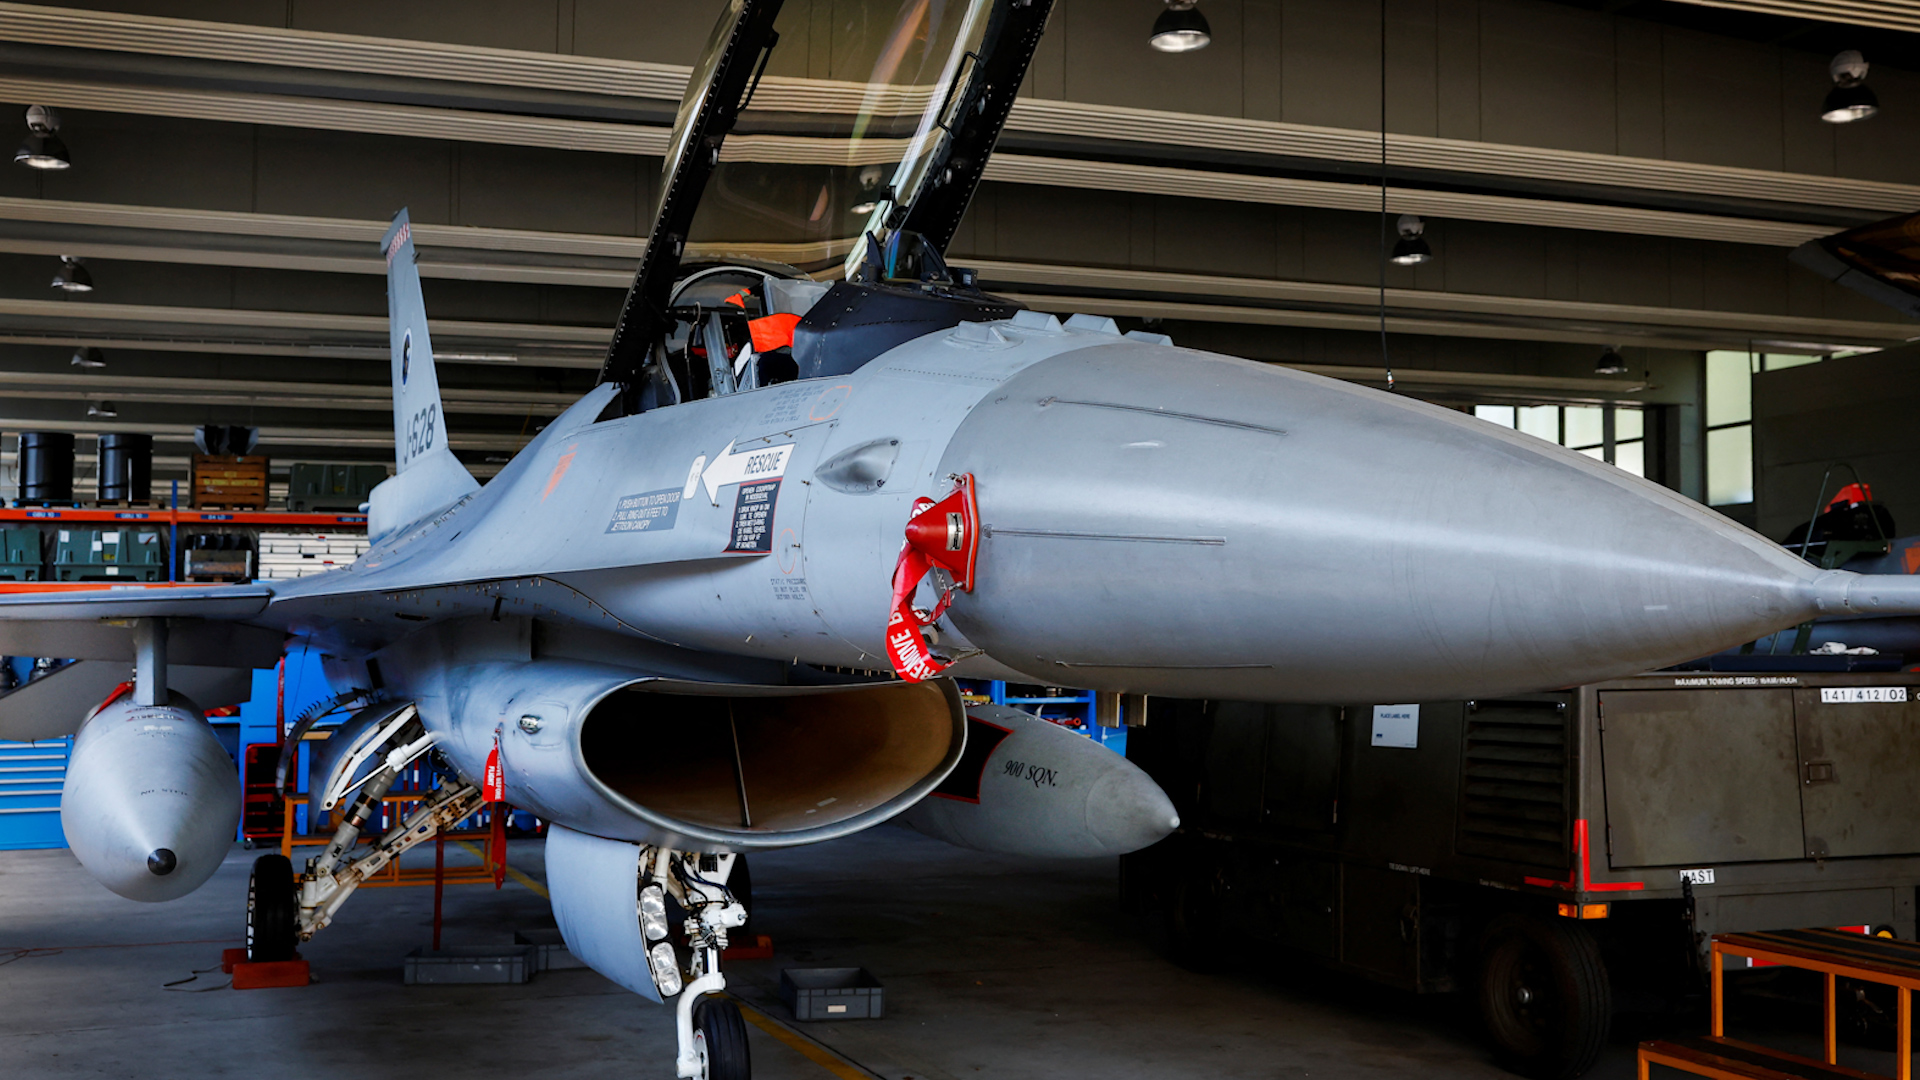 Châu Âu vẫn chờ Mỹ duyệt chương trình huấn luyện phi công F-16 cho Ukraine - Ảnh 1.